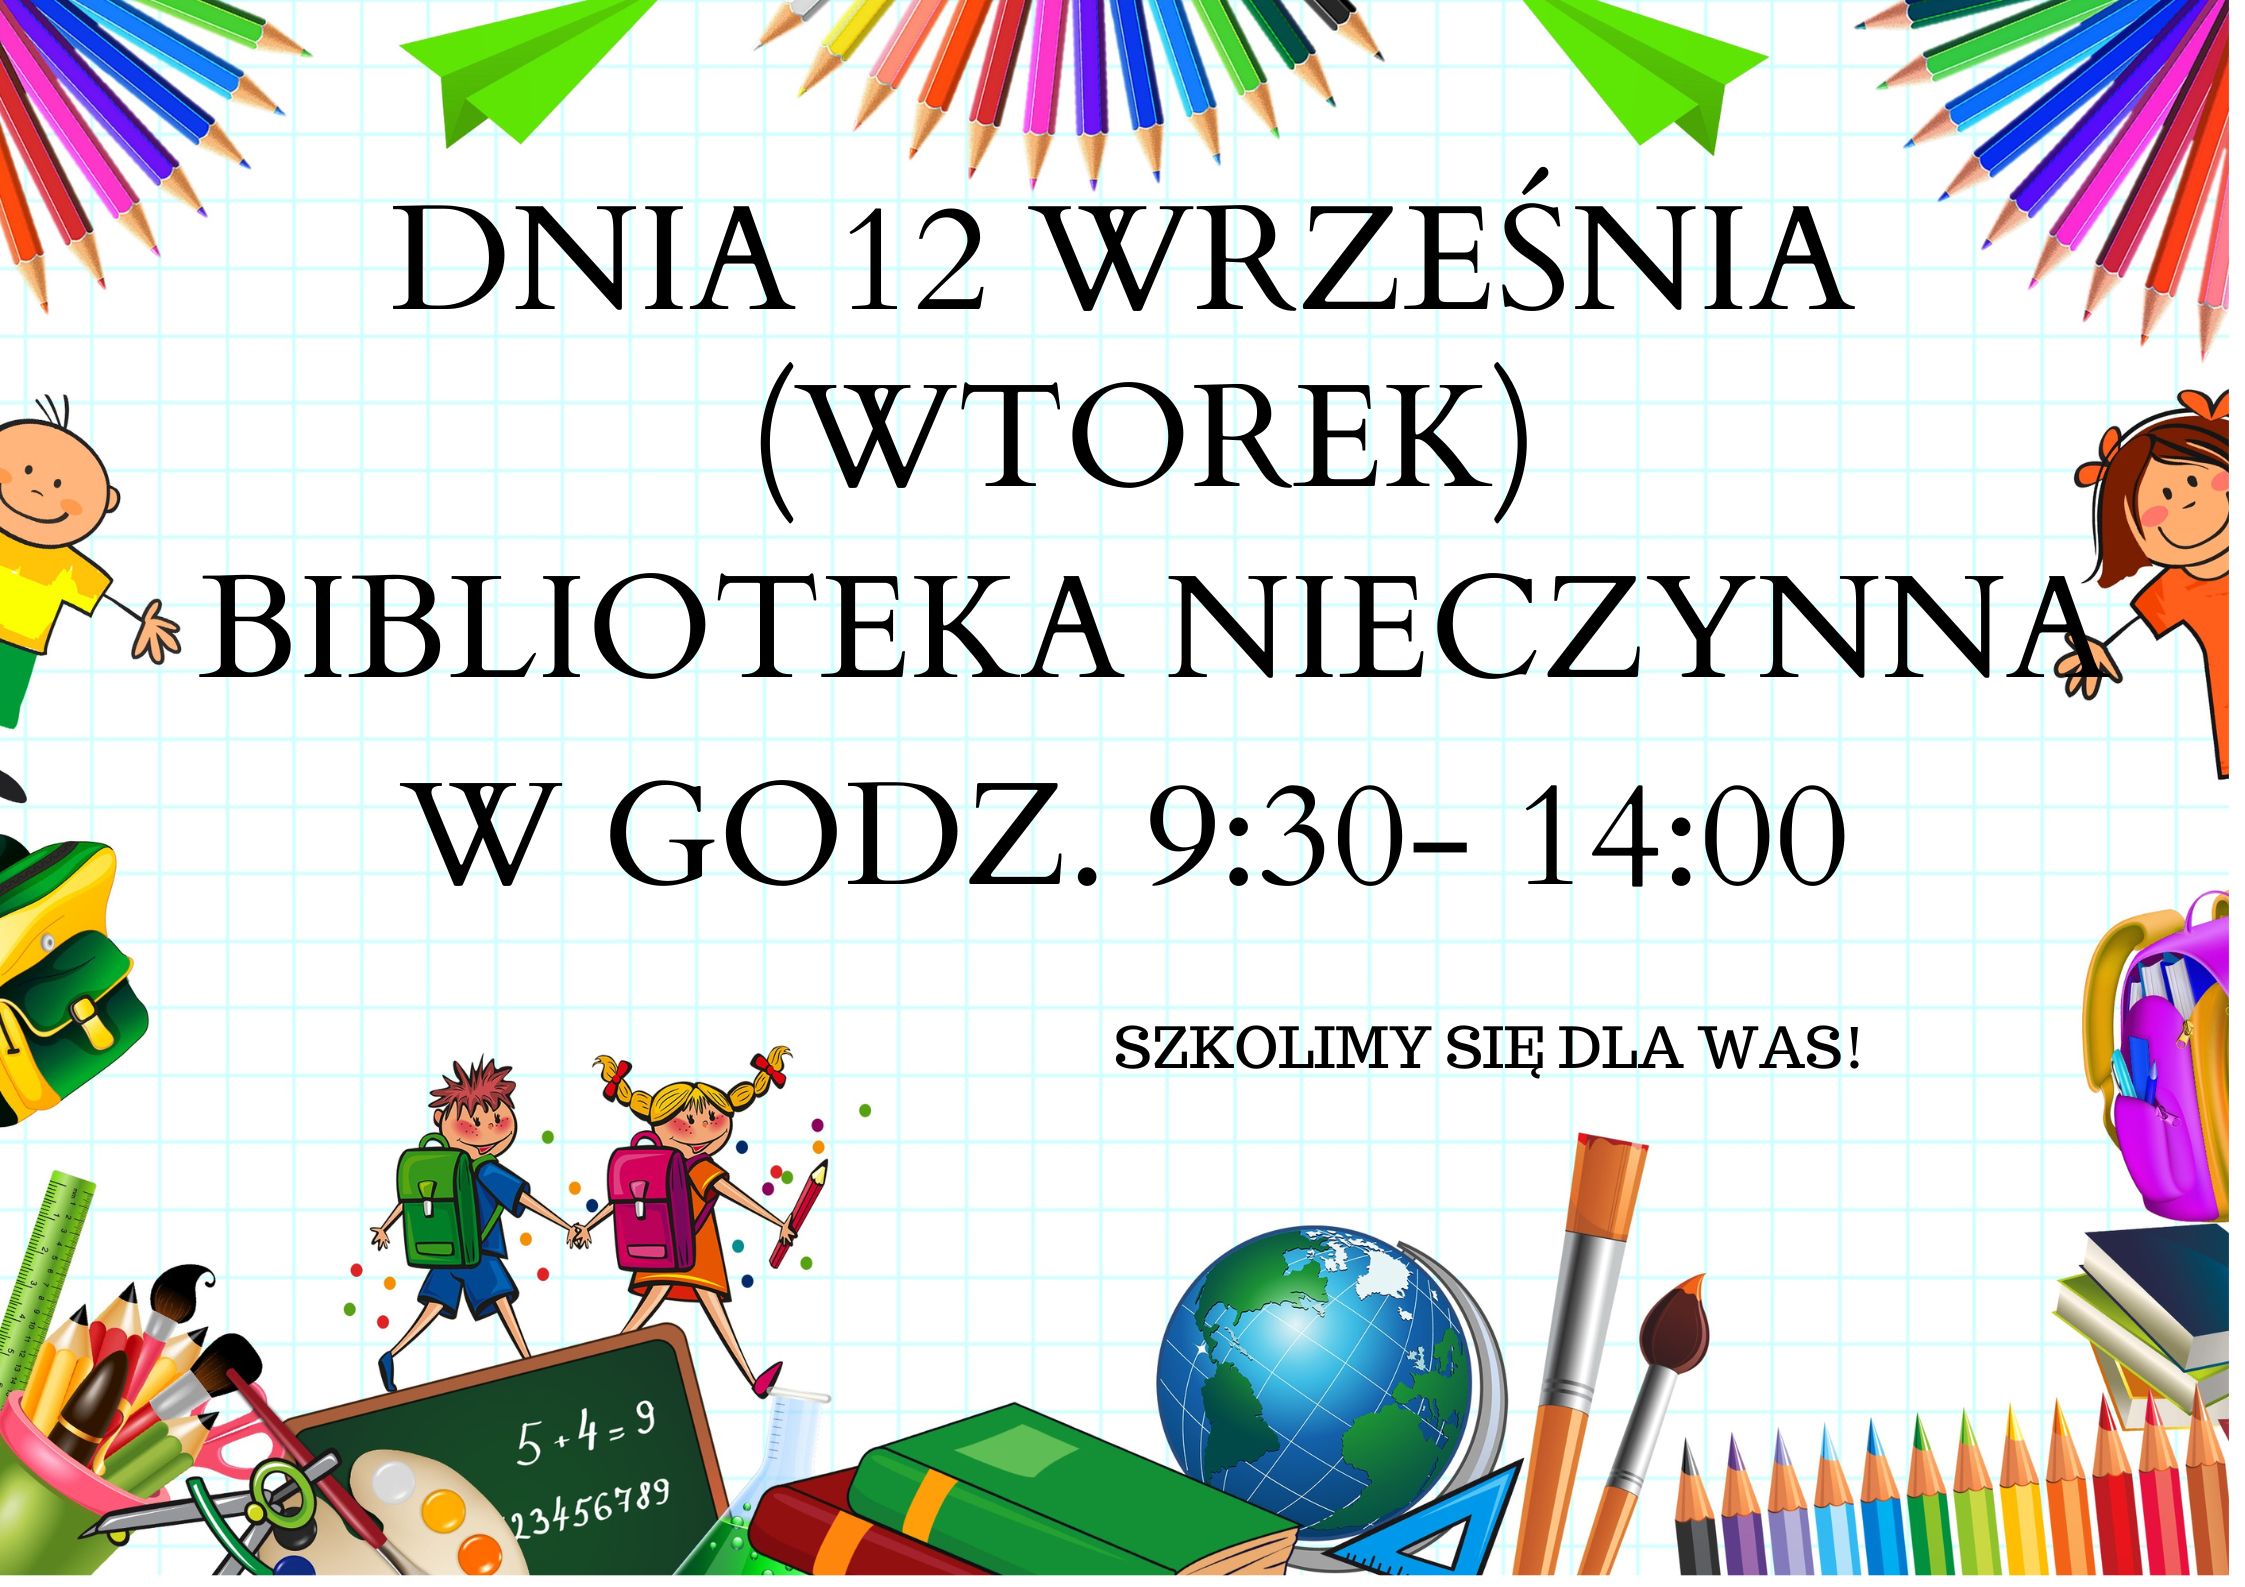 informacja na plakacie iż biblioteka nieczynna od 9:30 do 14:00 12 września